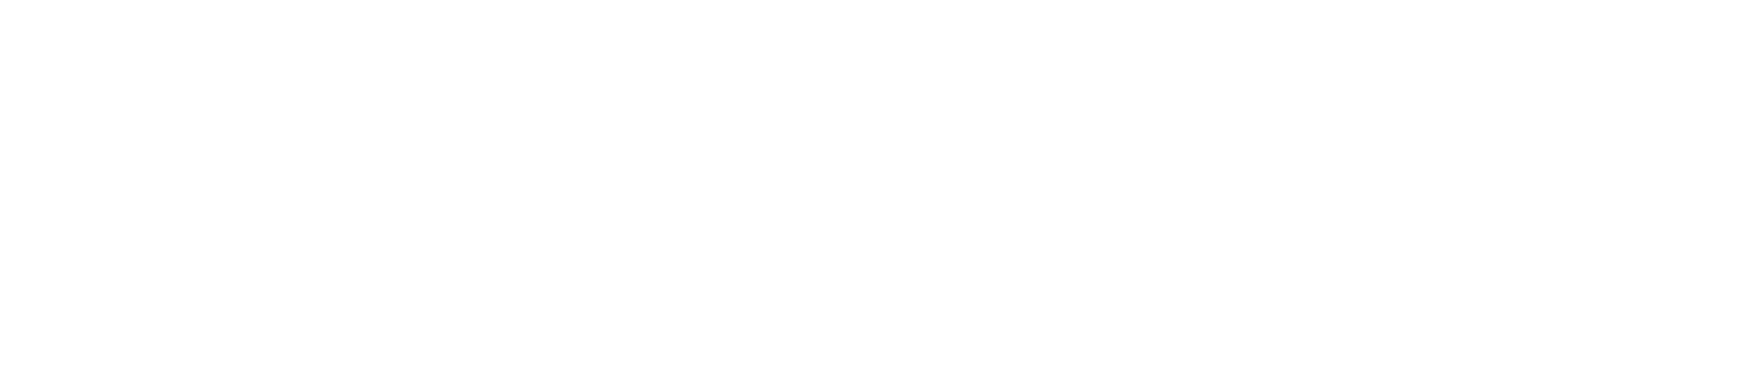 Octosoft Technologies